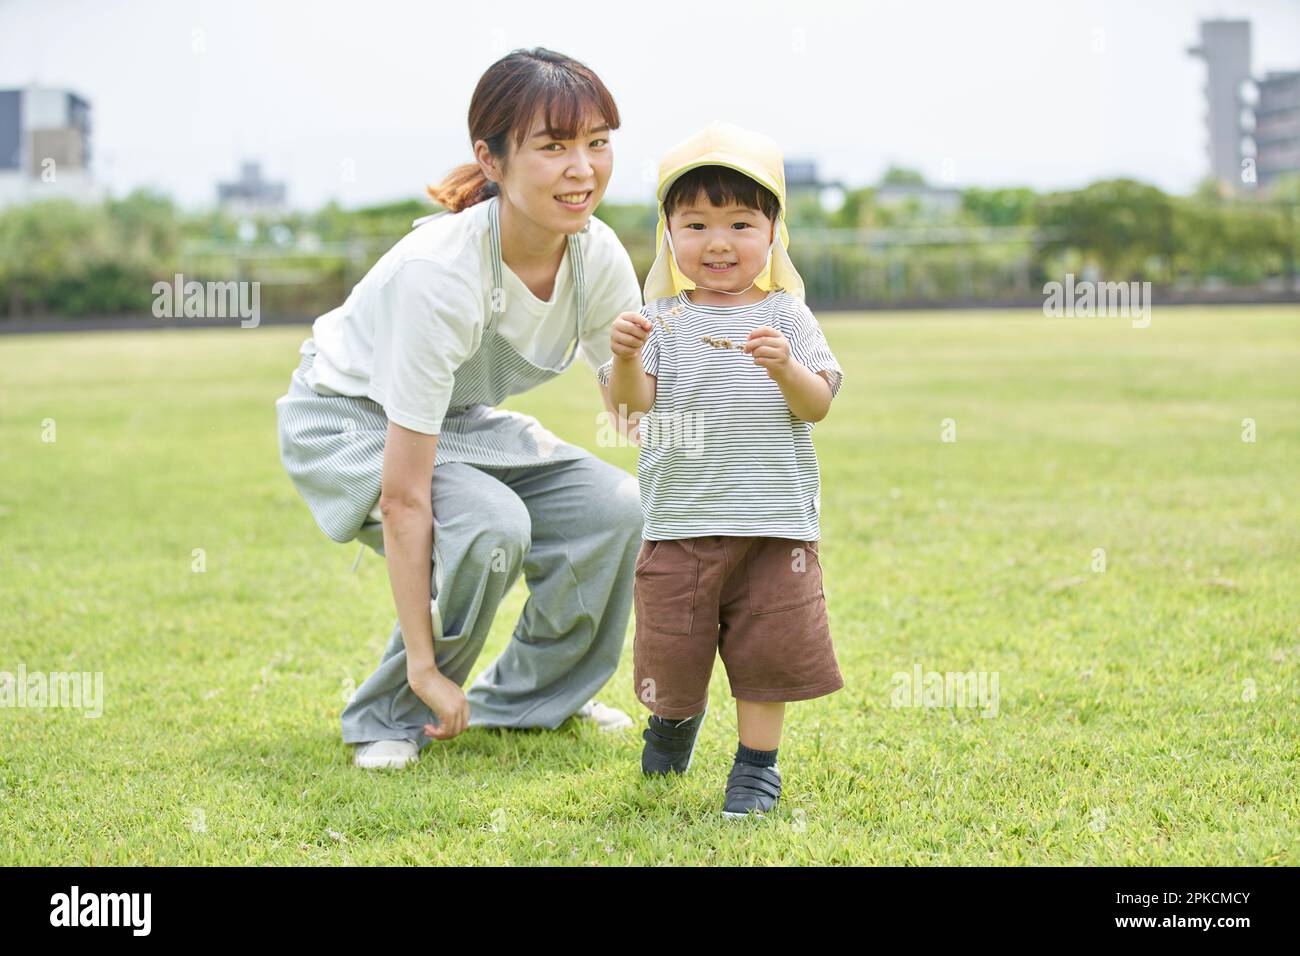 Kinderbetreuerin mit Kind, die auf dem Rasen spielt Stockfoto